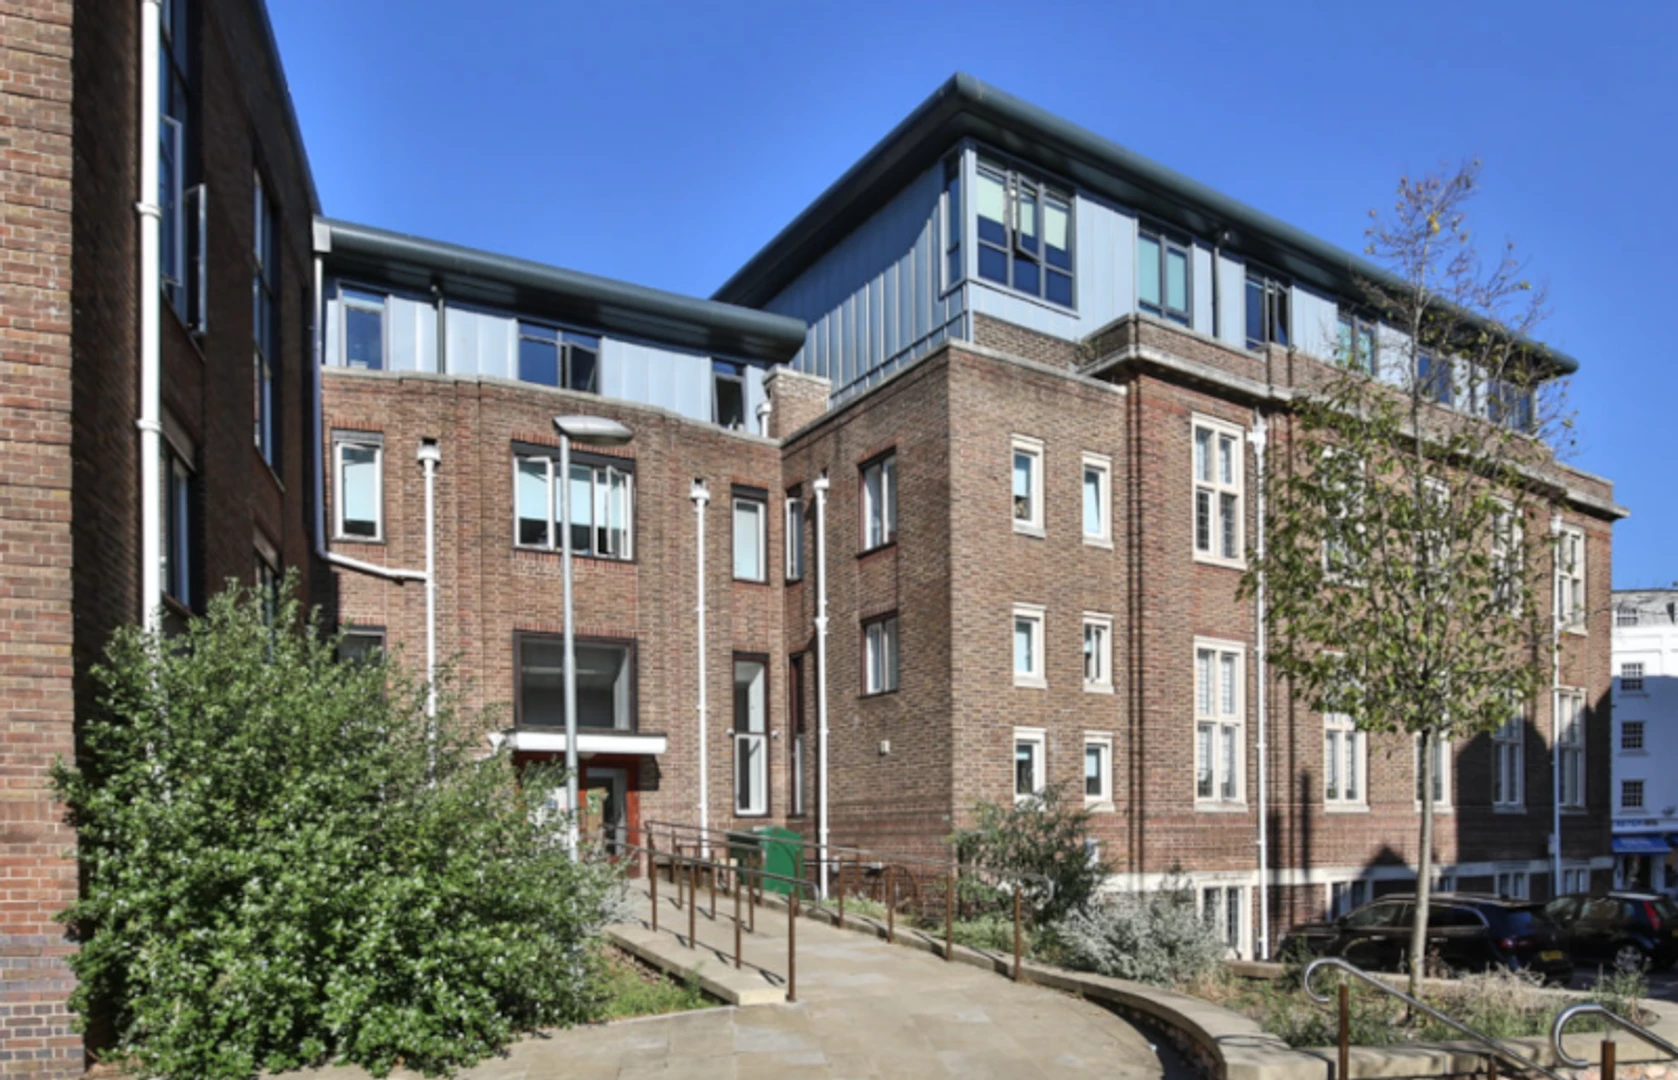 Alojamiento situado en el centro de Exeter